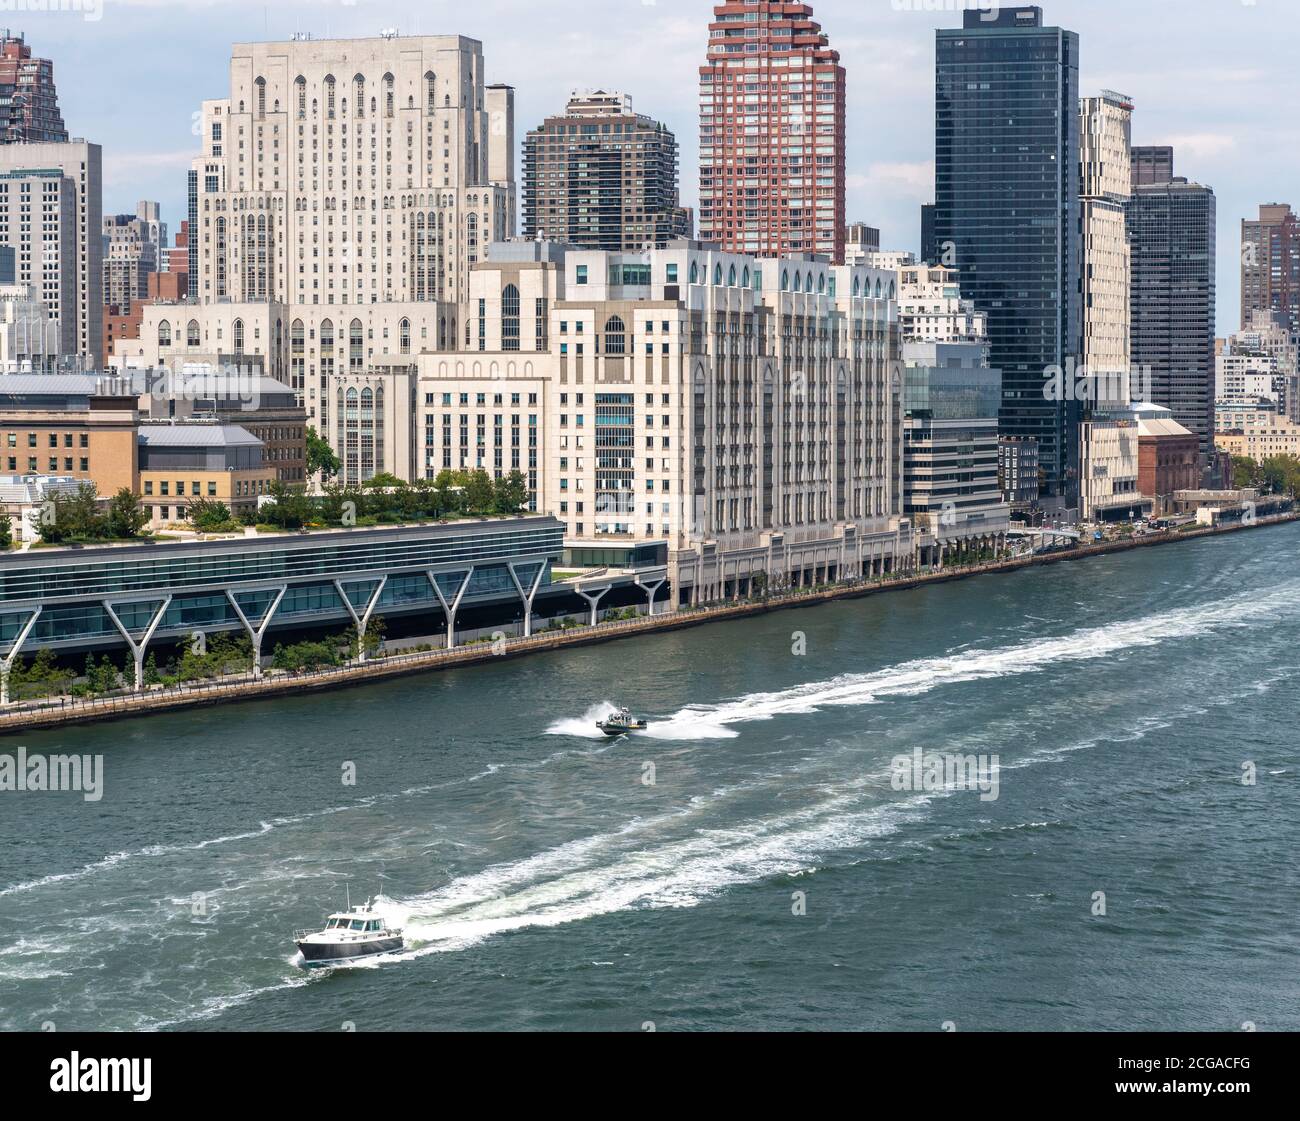 Partie supérieure est de Manhattan, New York, avec des bateaux à moteur sur l'East River Banque D'Images